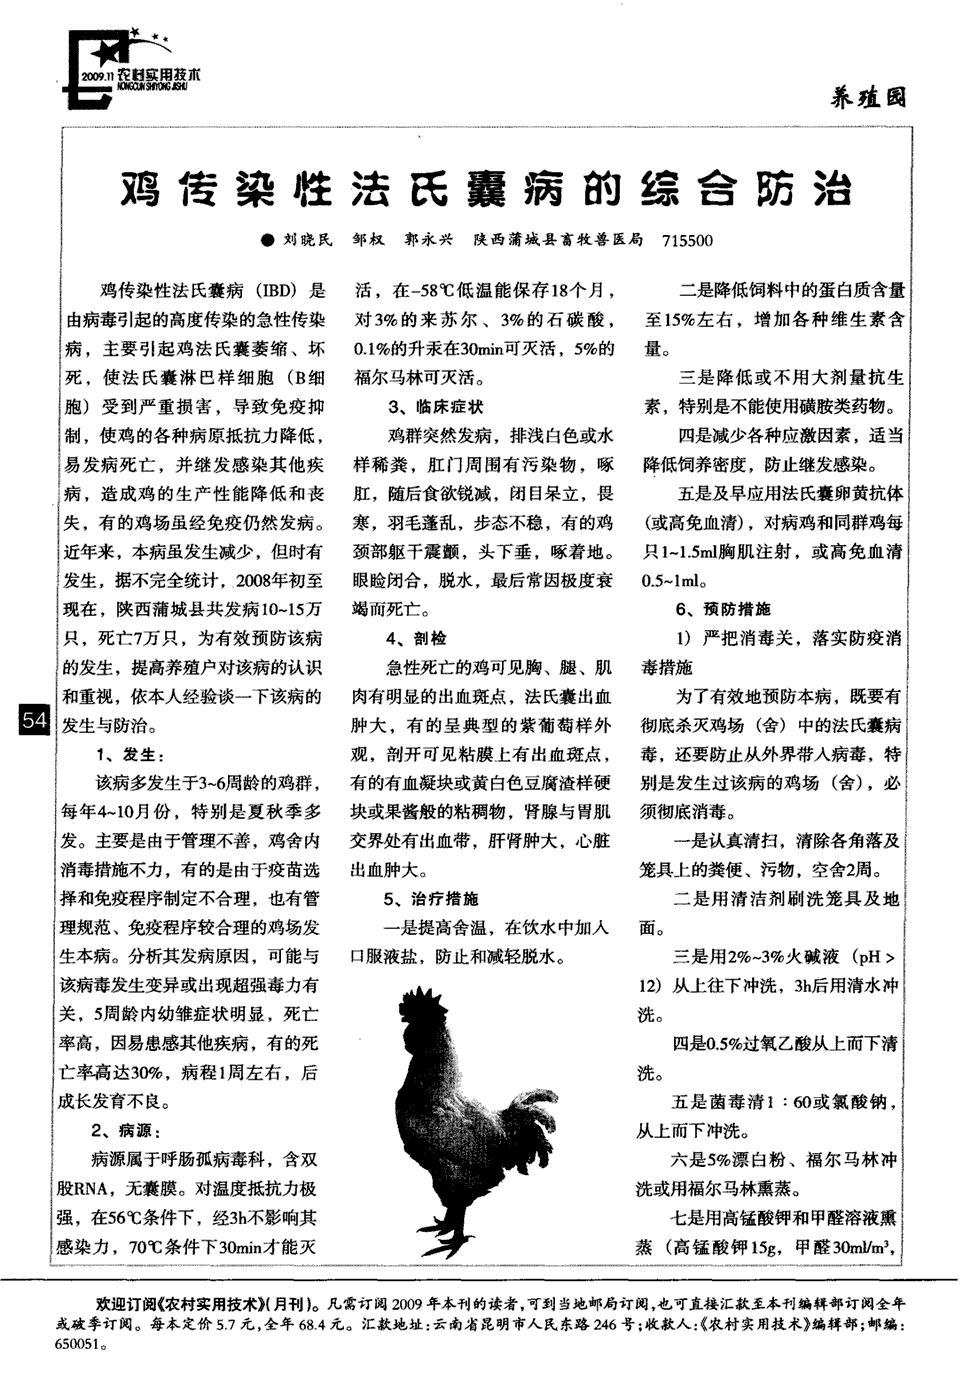 期刊鸡传染性法氏囊病的综合防治被引量:2     鸡传染性法氏囊病(ibd